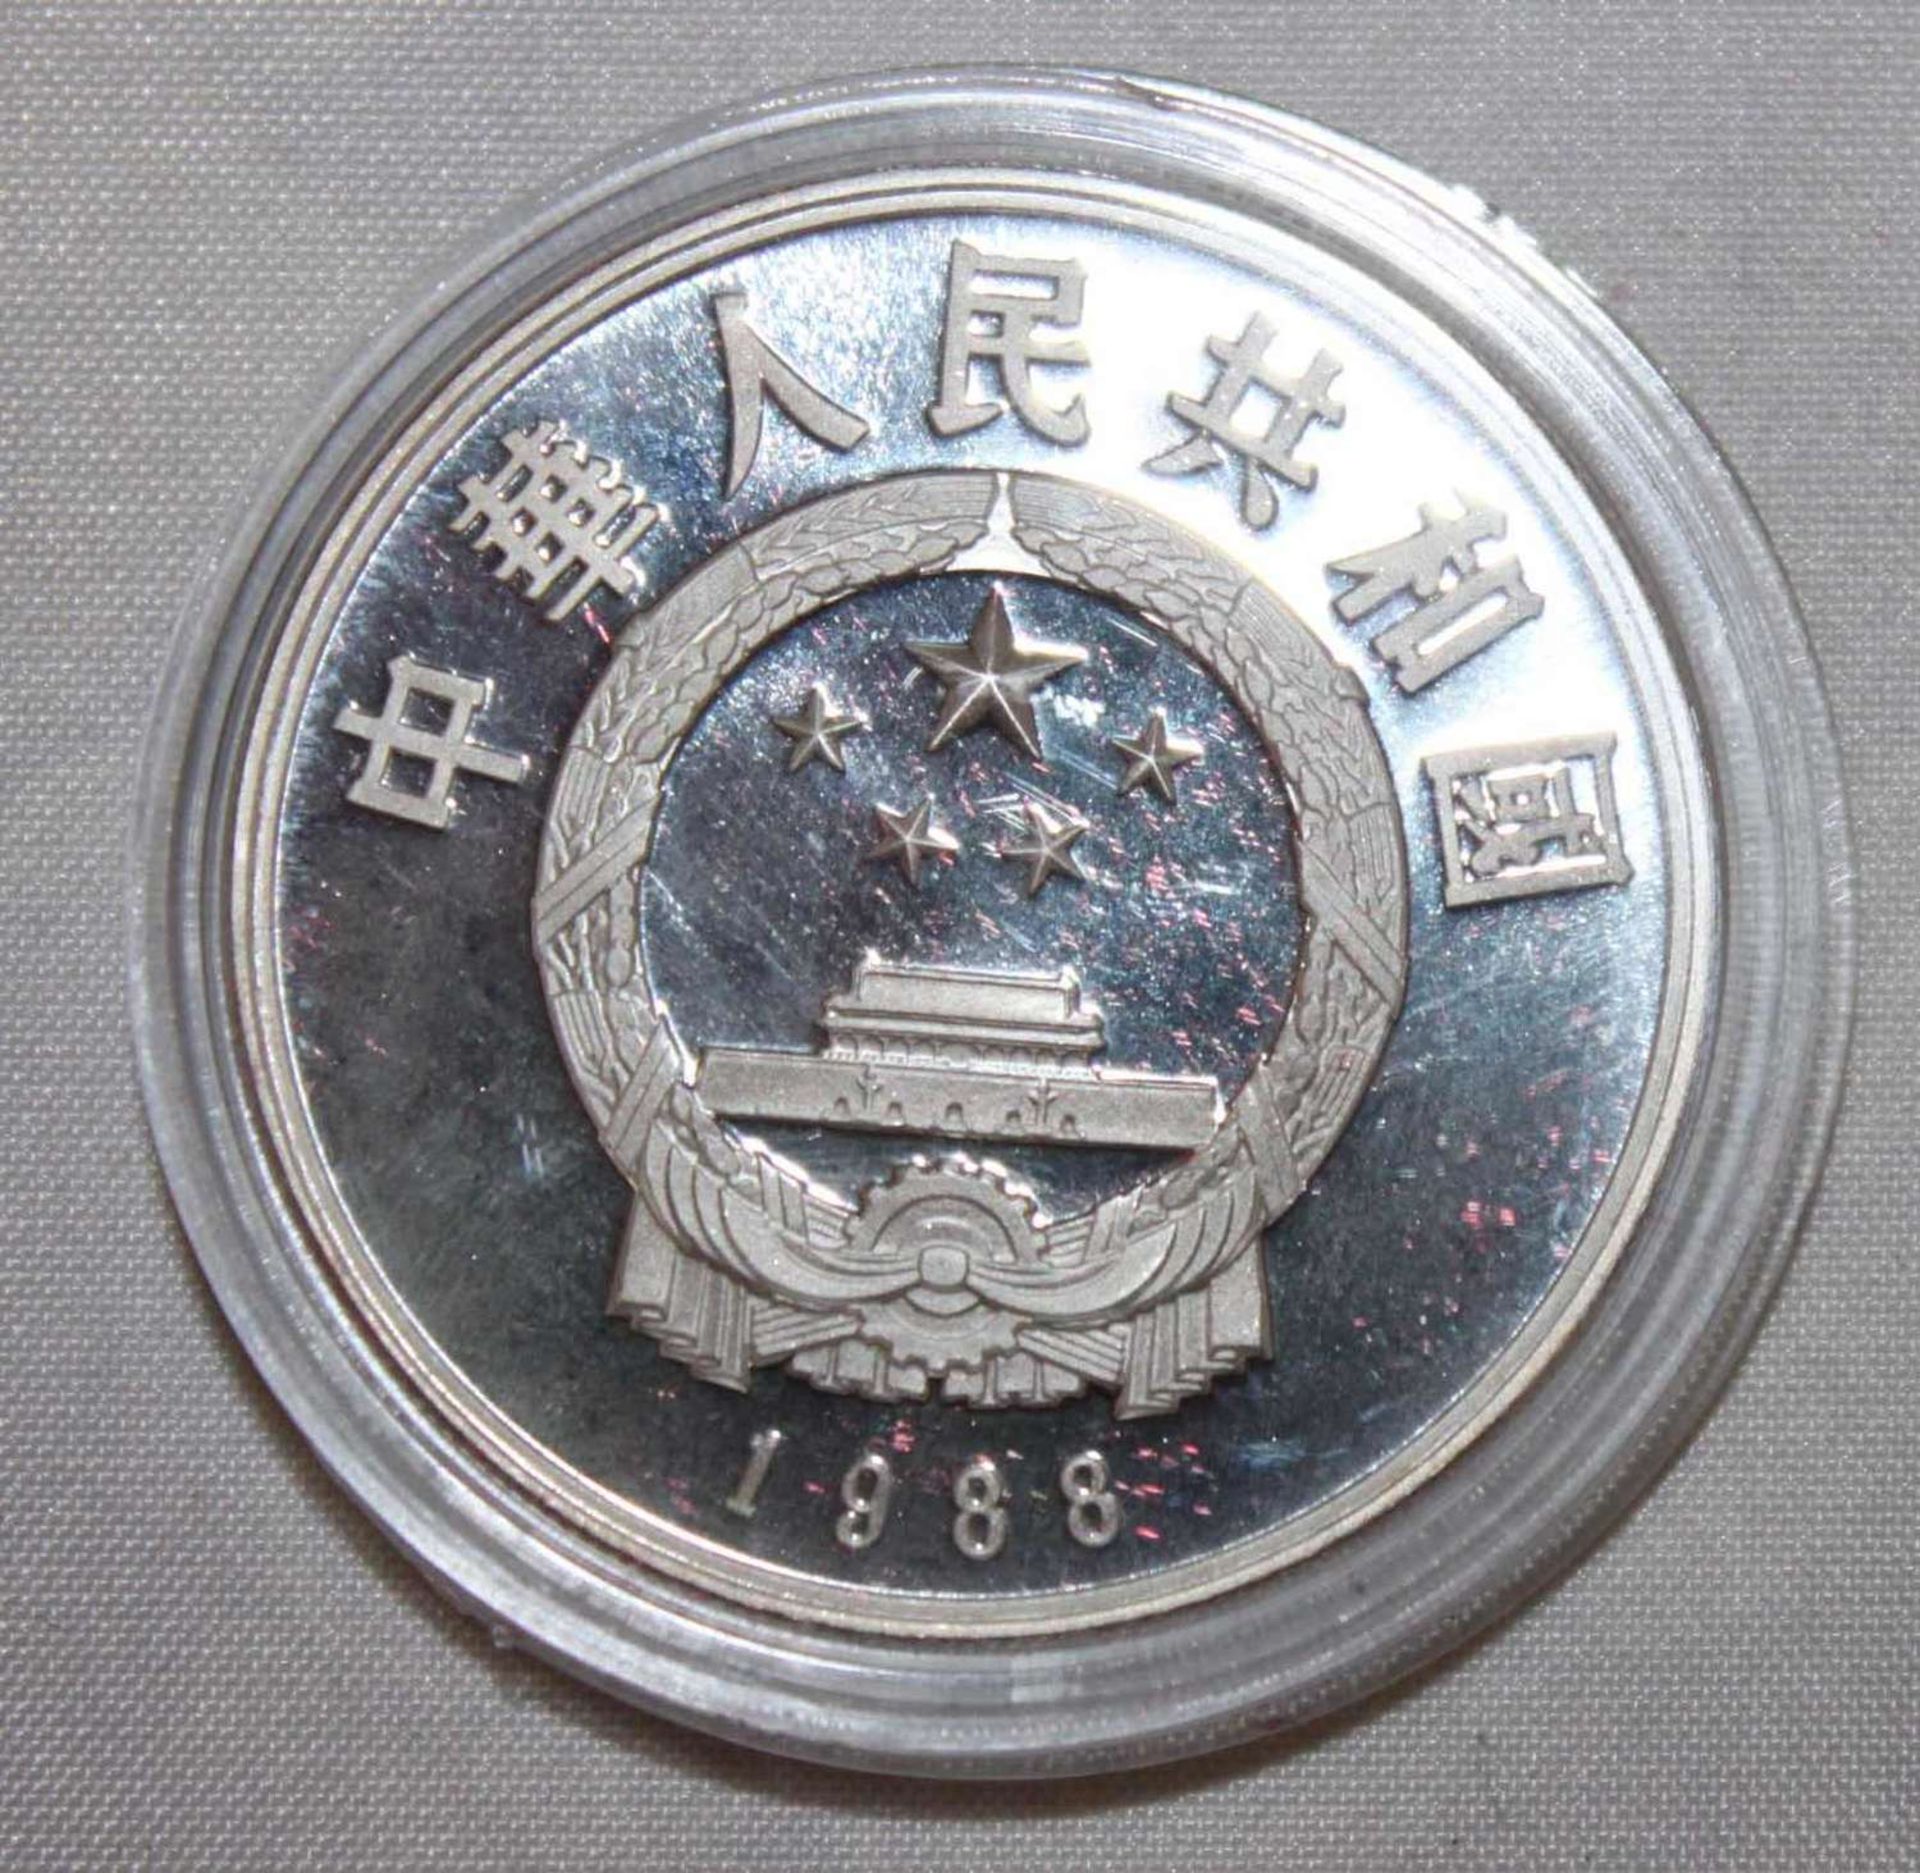 China 1987, 5 Yuan - Silbermünze "Bi Sheng". Silber 900. Gewicht: 22,2 gr.. In Kapsel. Erhaltung: - Bild 2 aus 3